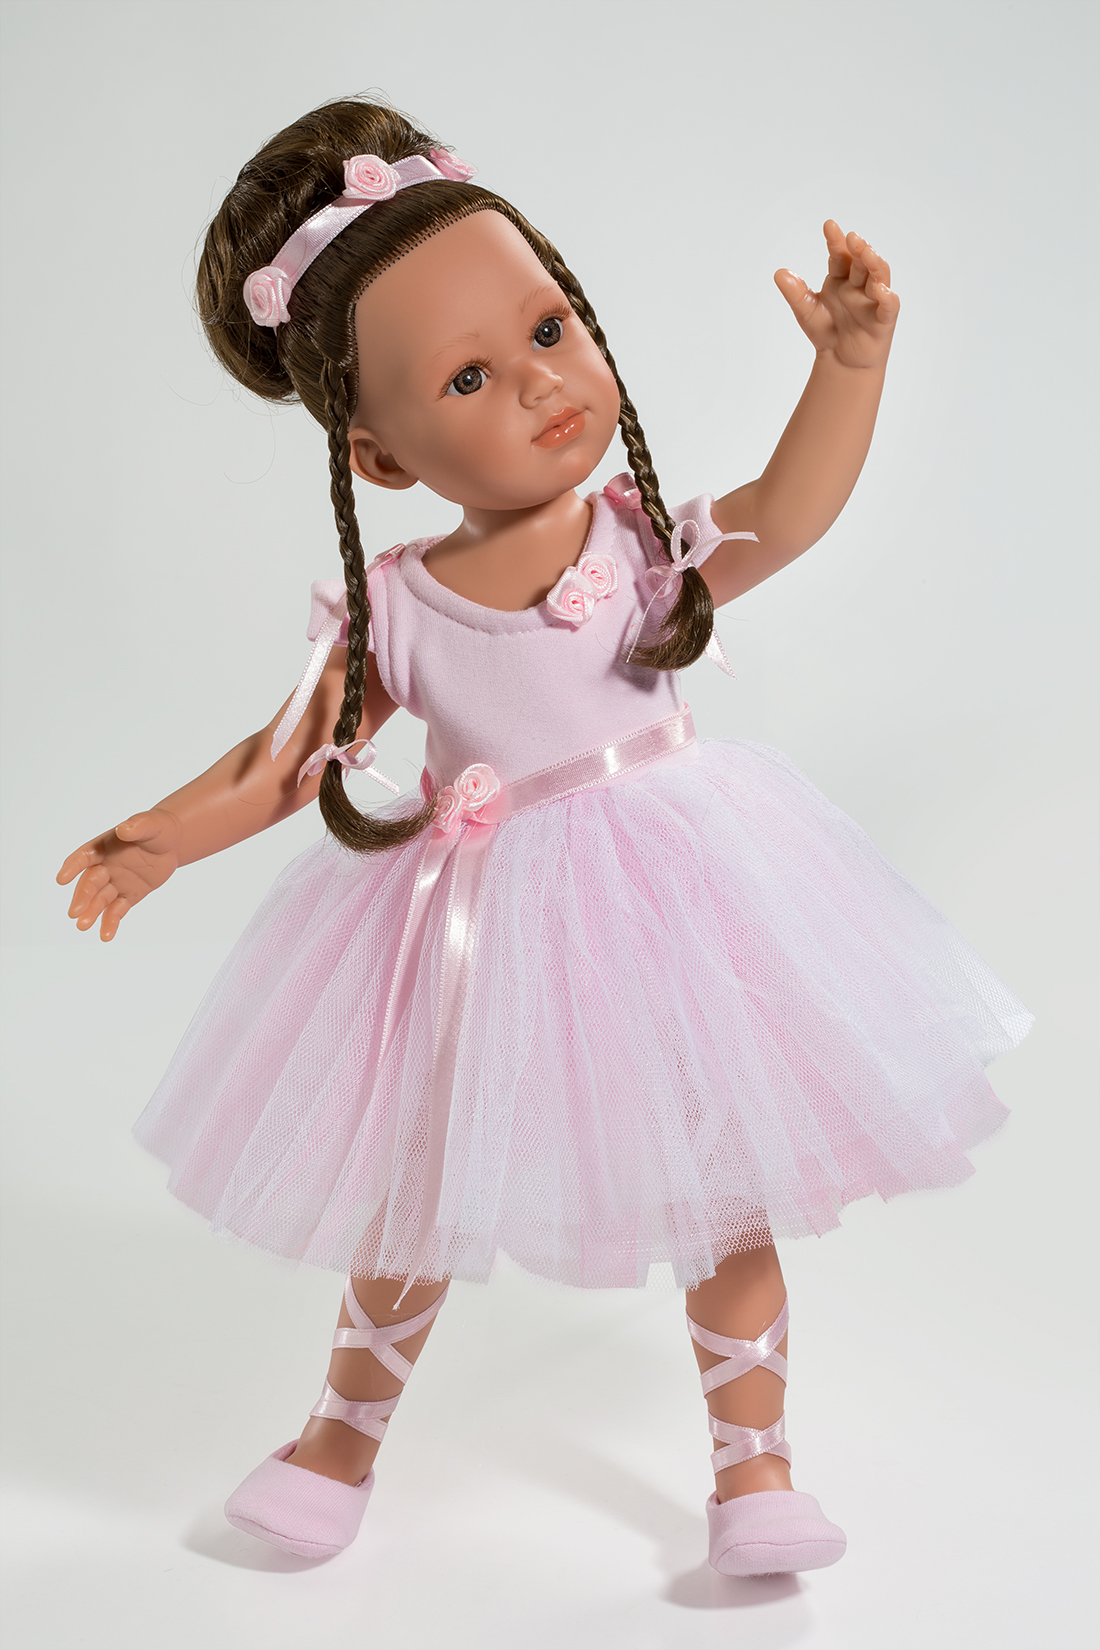 fotografía de producto profesional muñeca